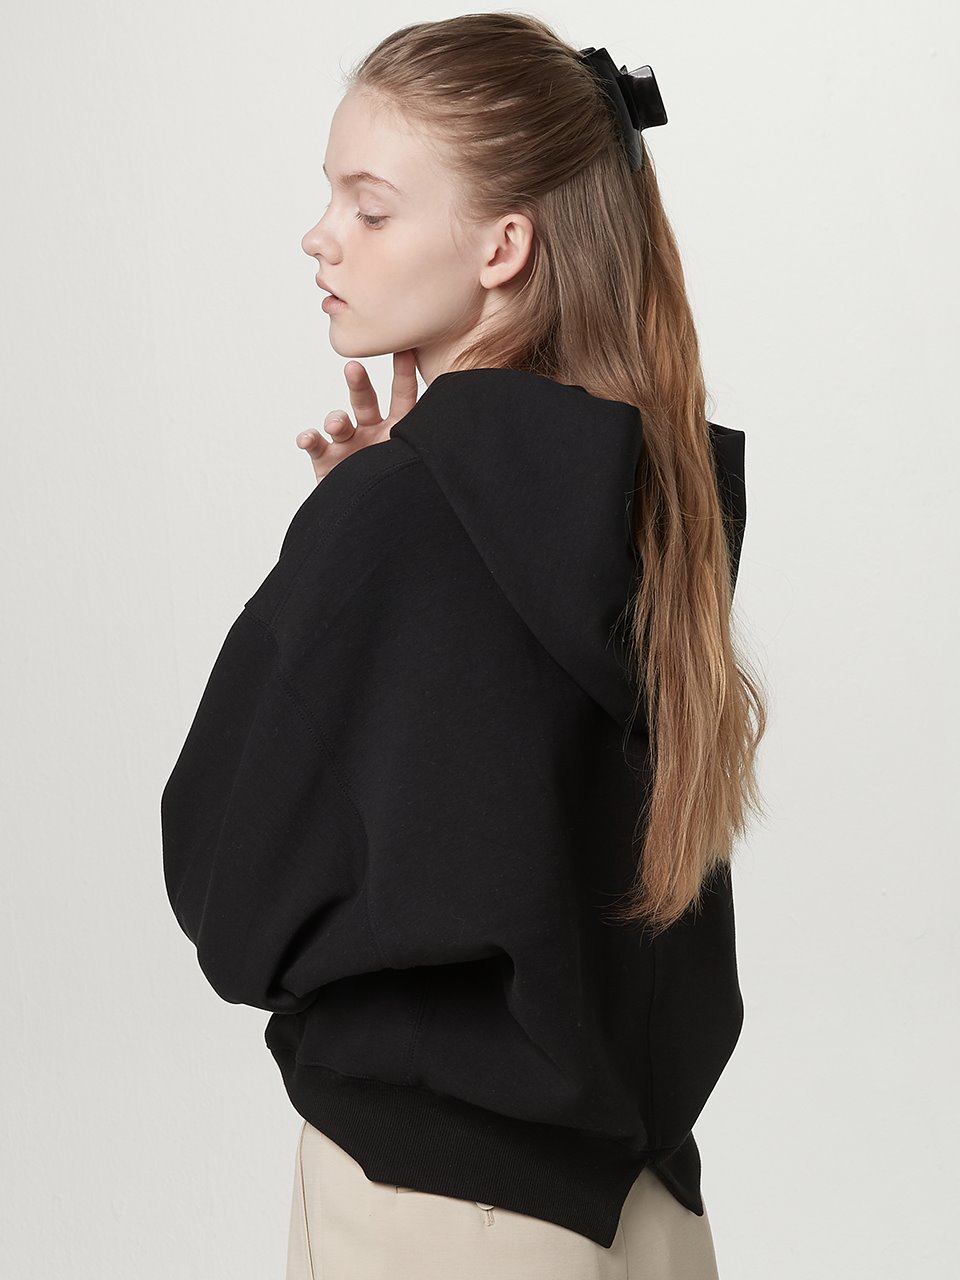 Wing sleeve hoodie sweatshirt - Black